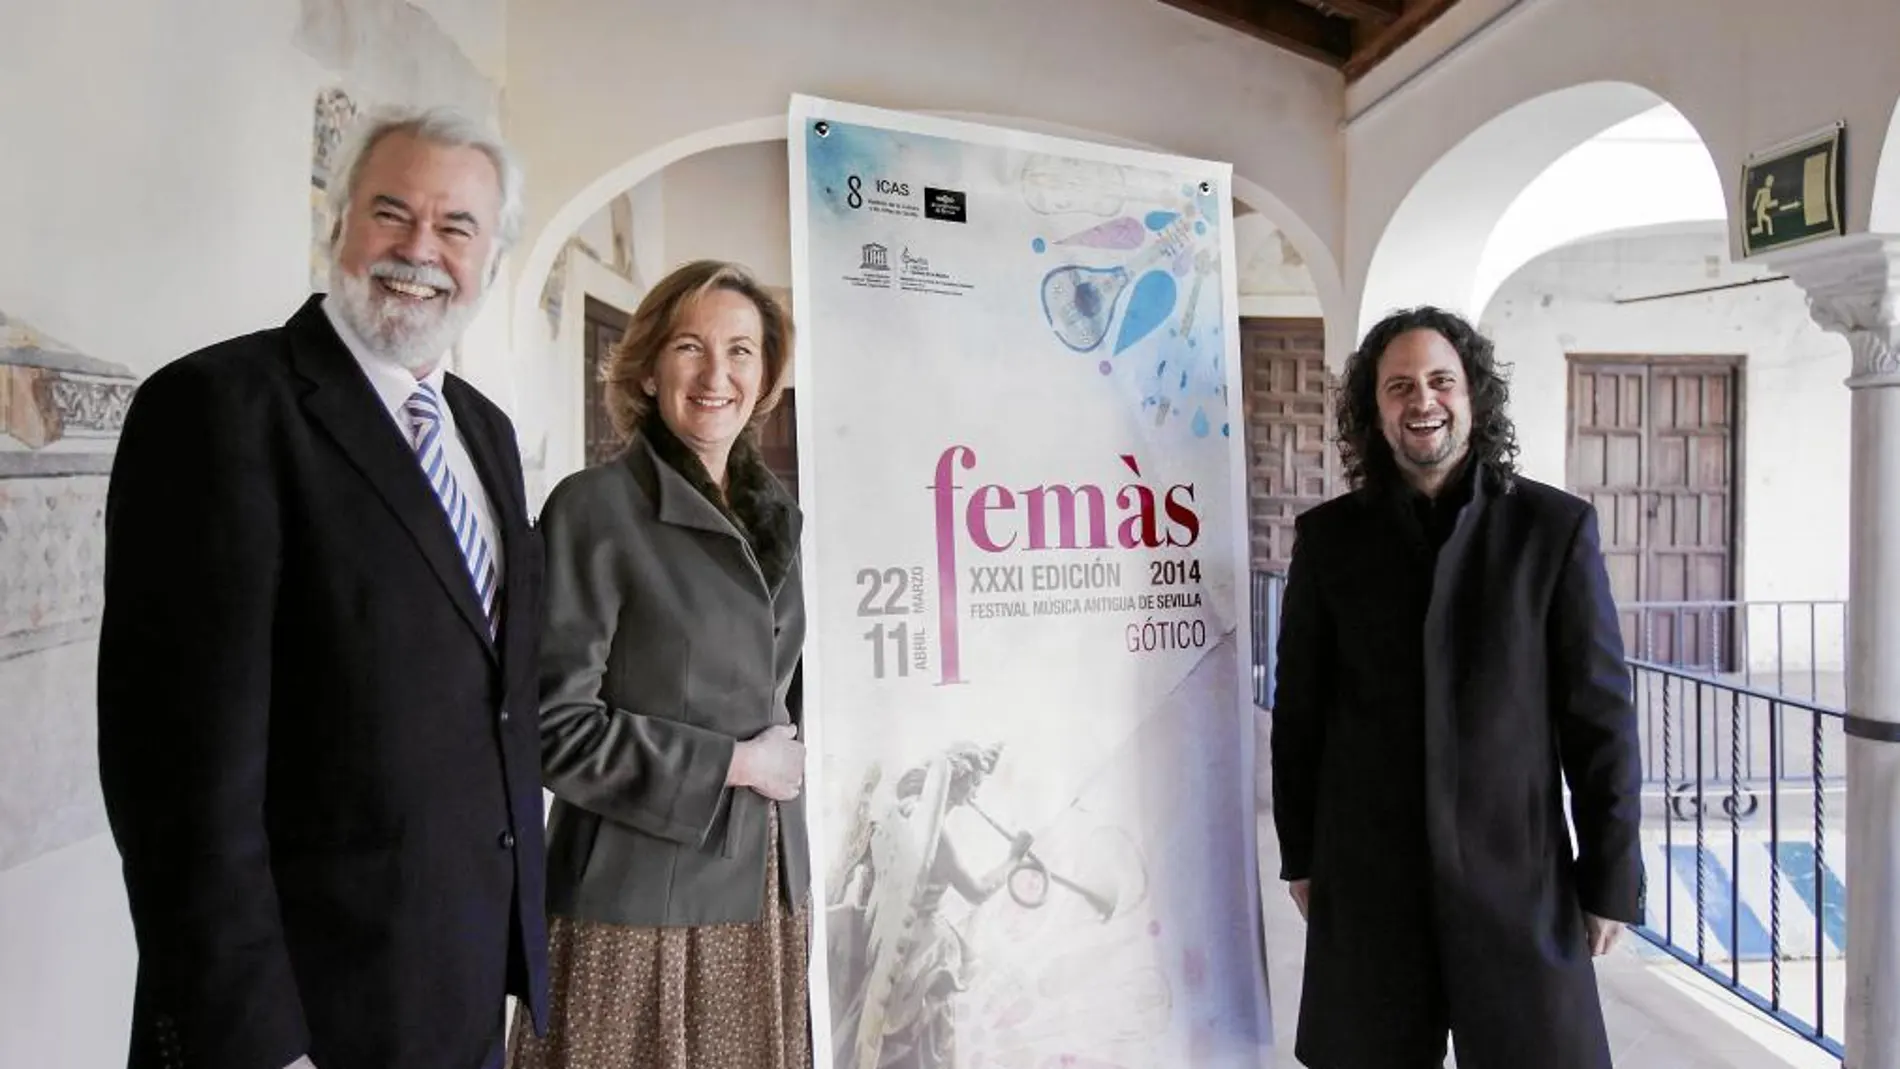 Antonio Moral, María del Mar Sánchez y Fahmi Alqhai, ayer en la presentación del certamen de música antigua